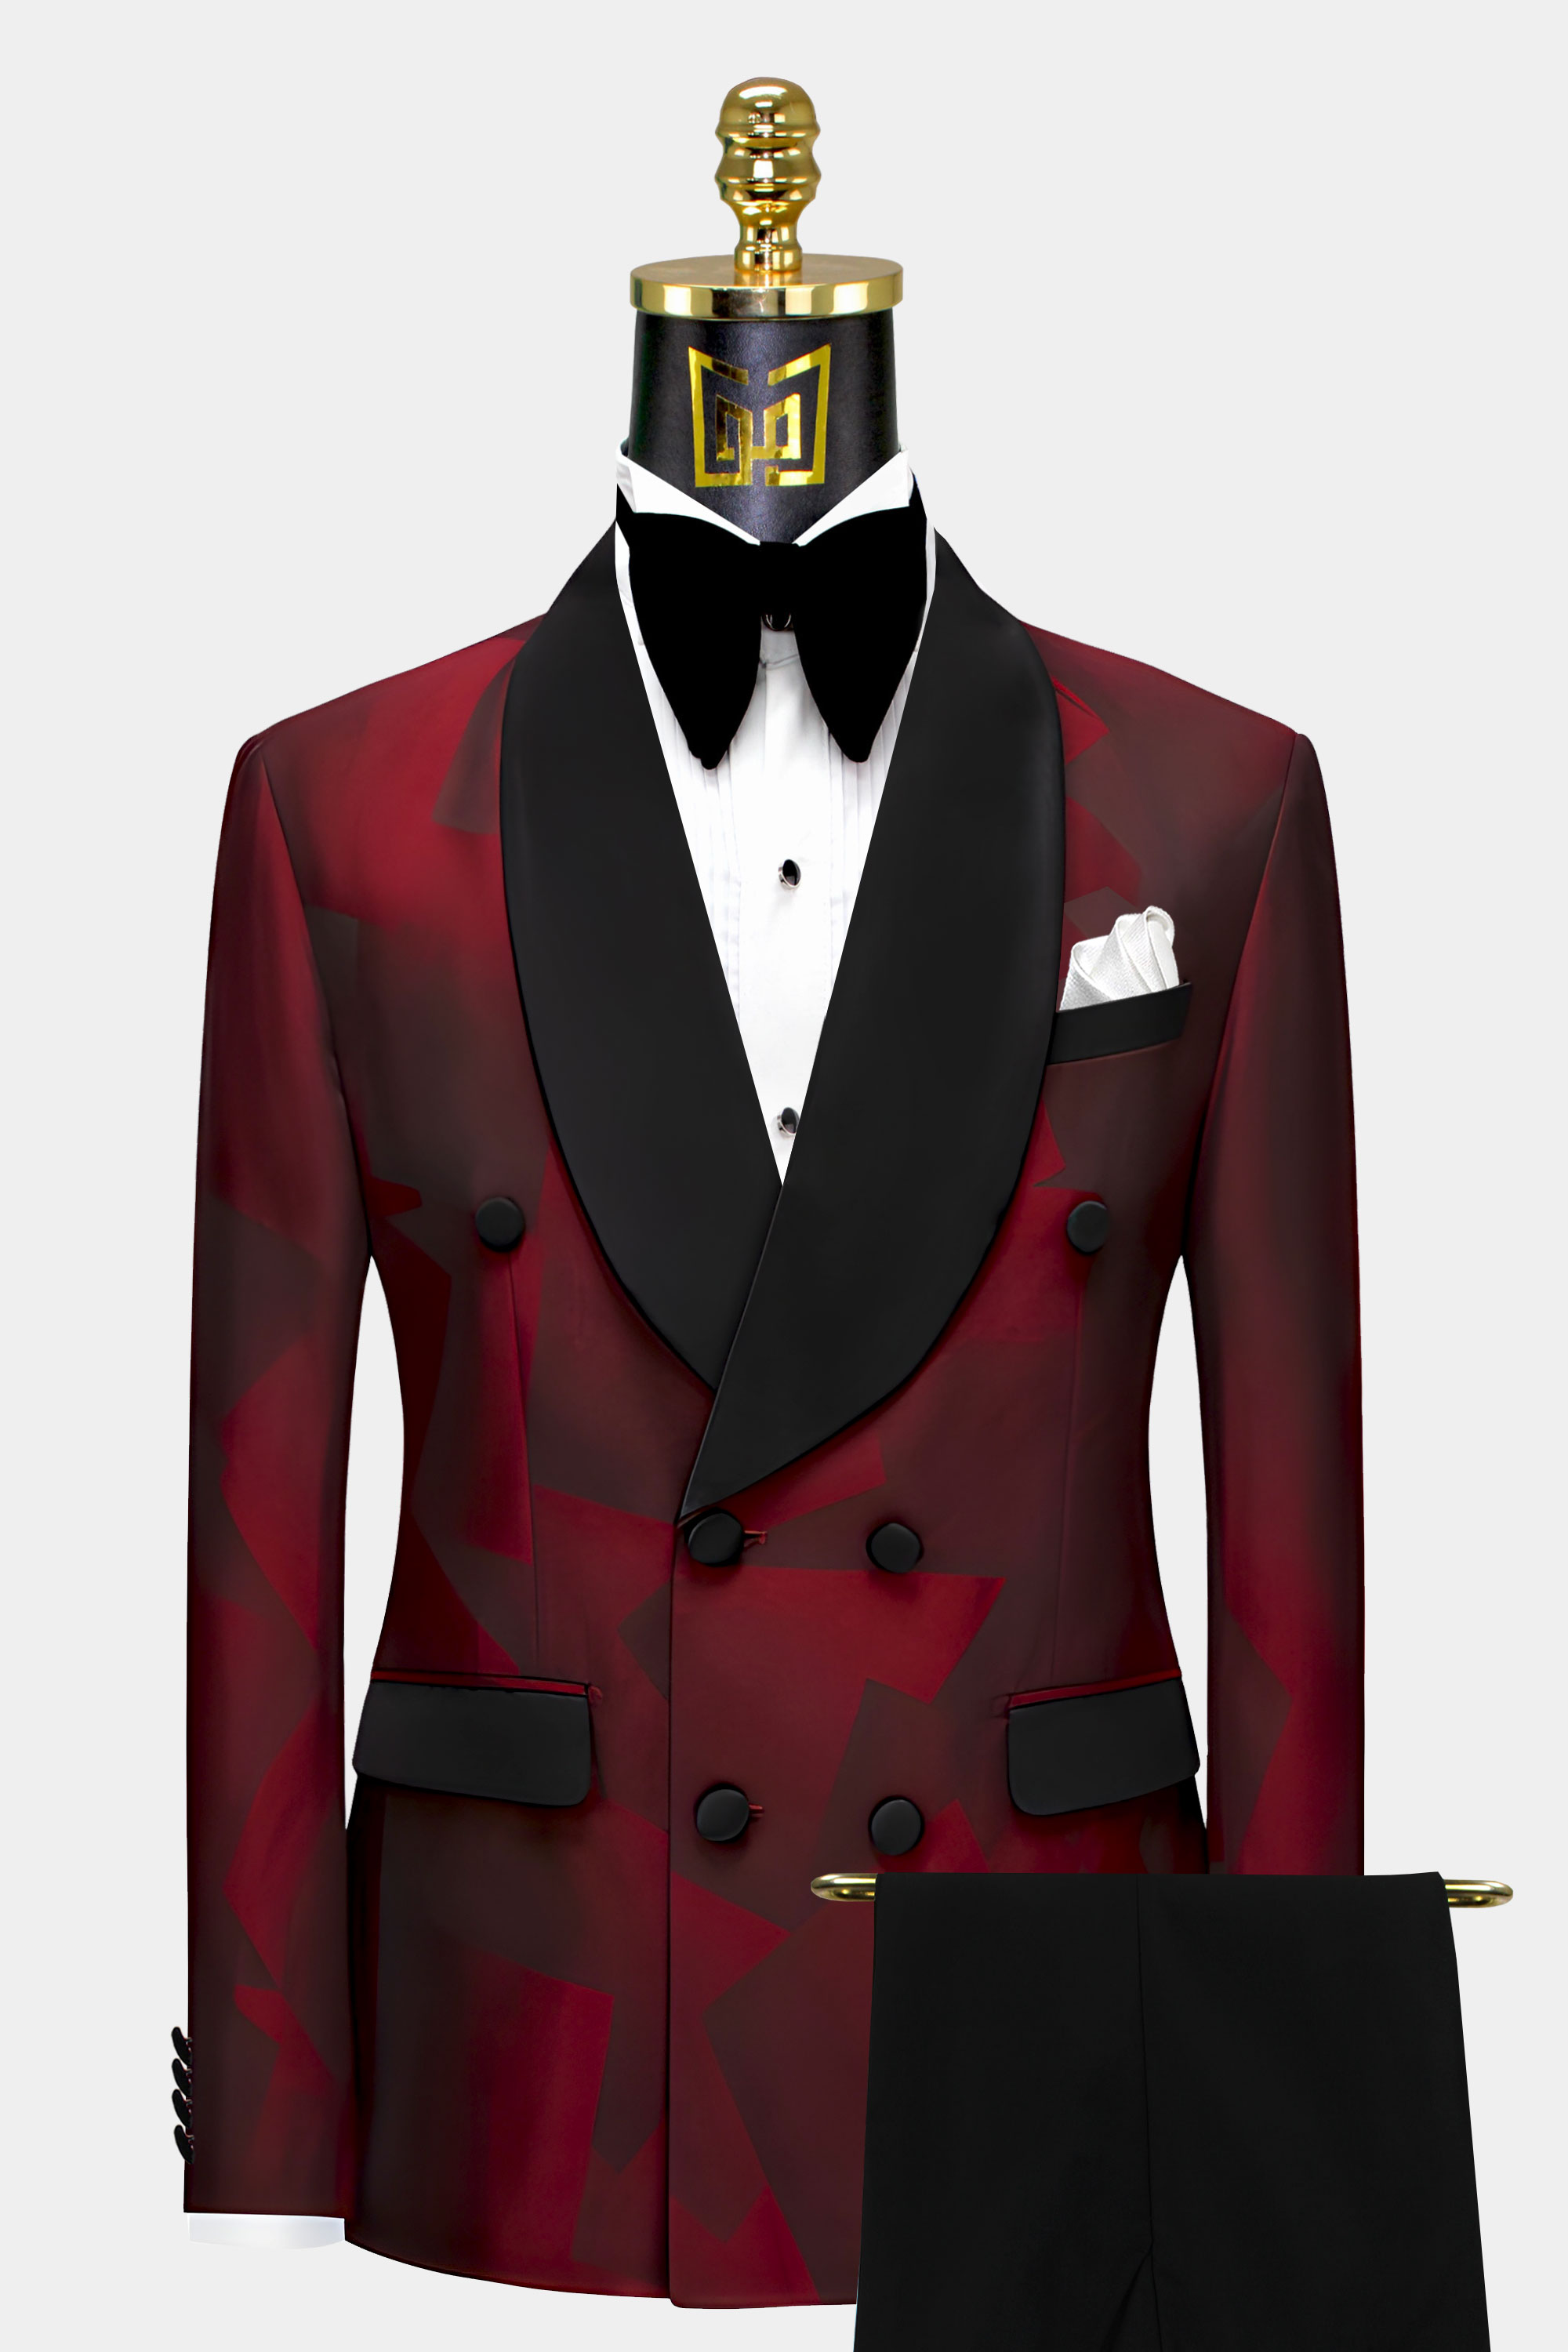 Black-and-Maroon-Tuxedo-Groom-Wedding-Suit-For-Men-from-Gentlemansguru.com